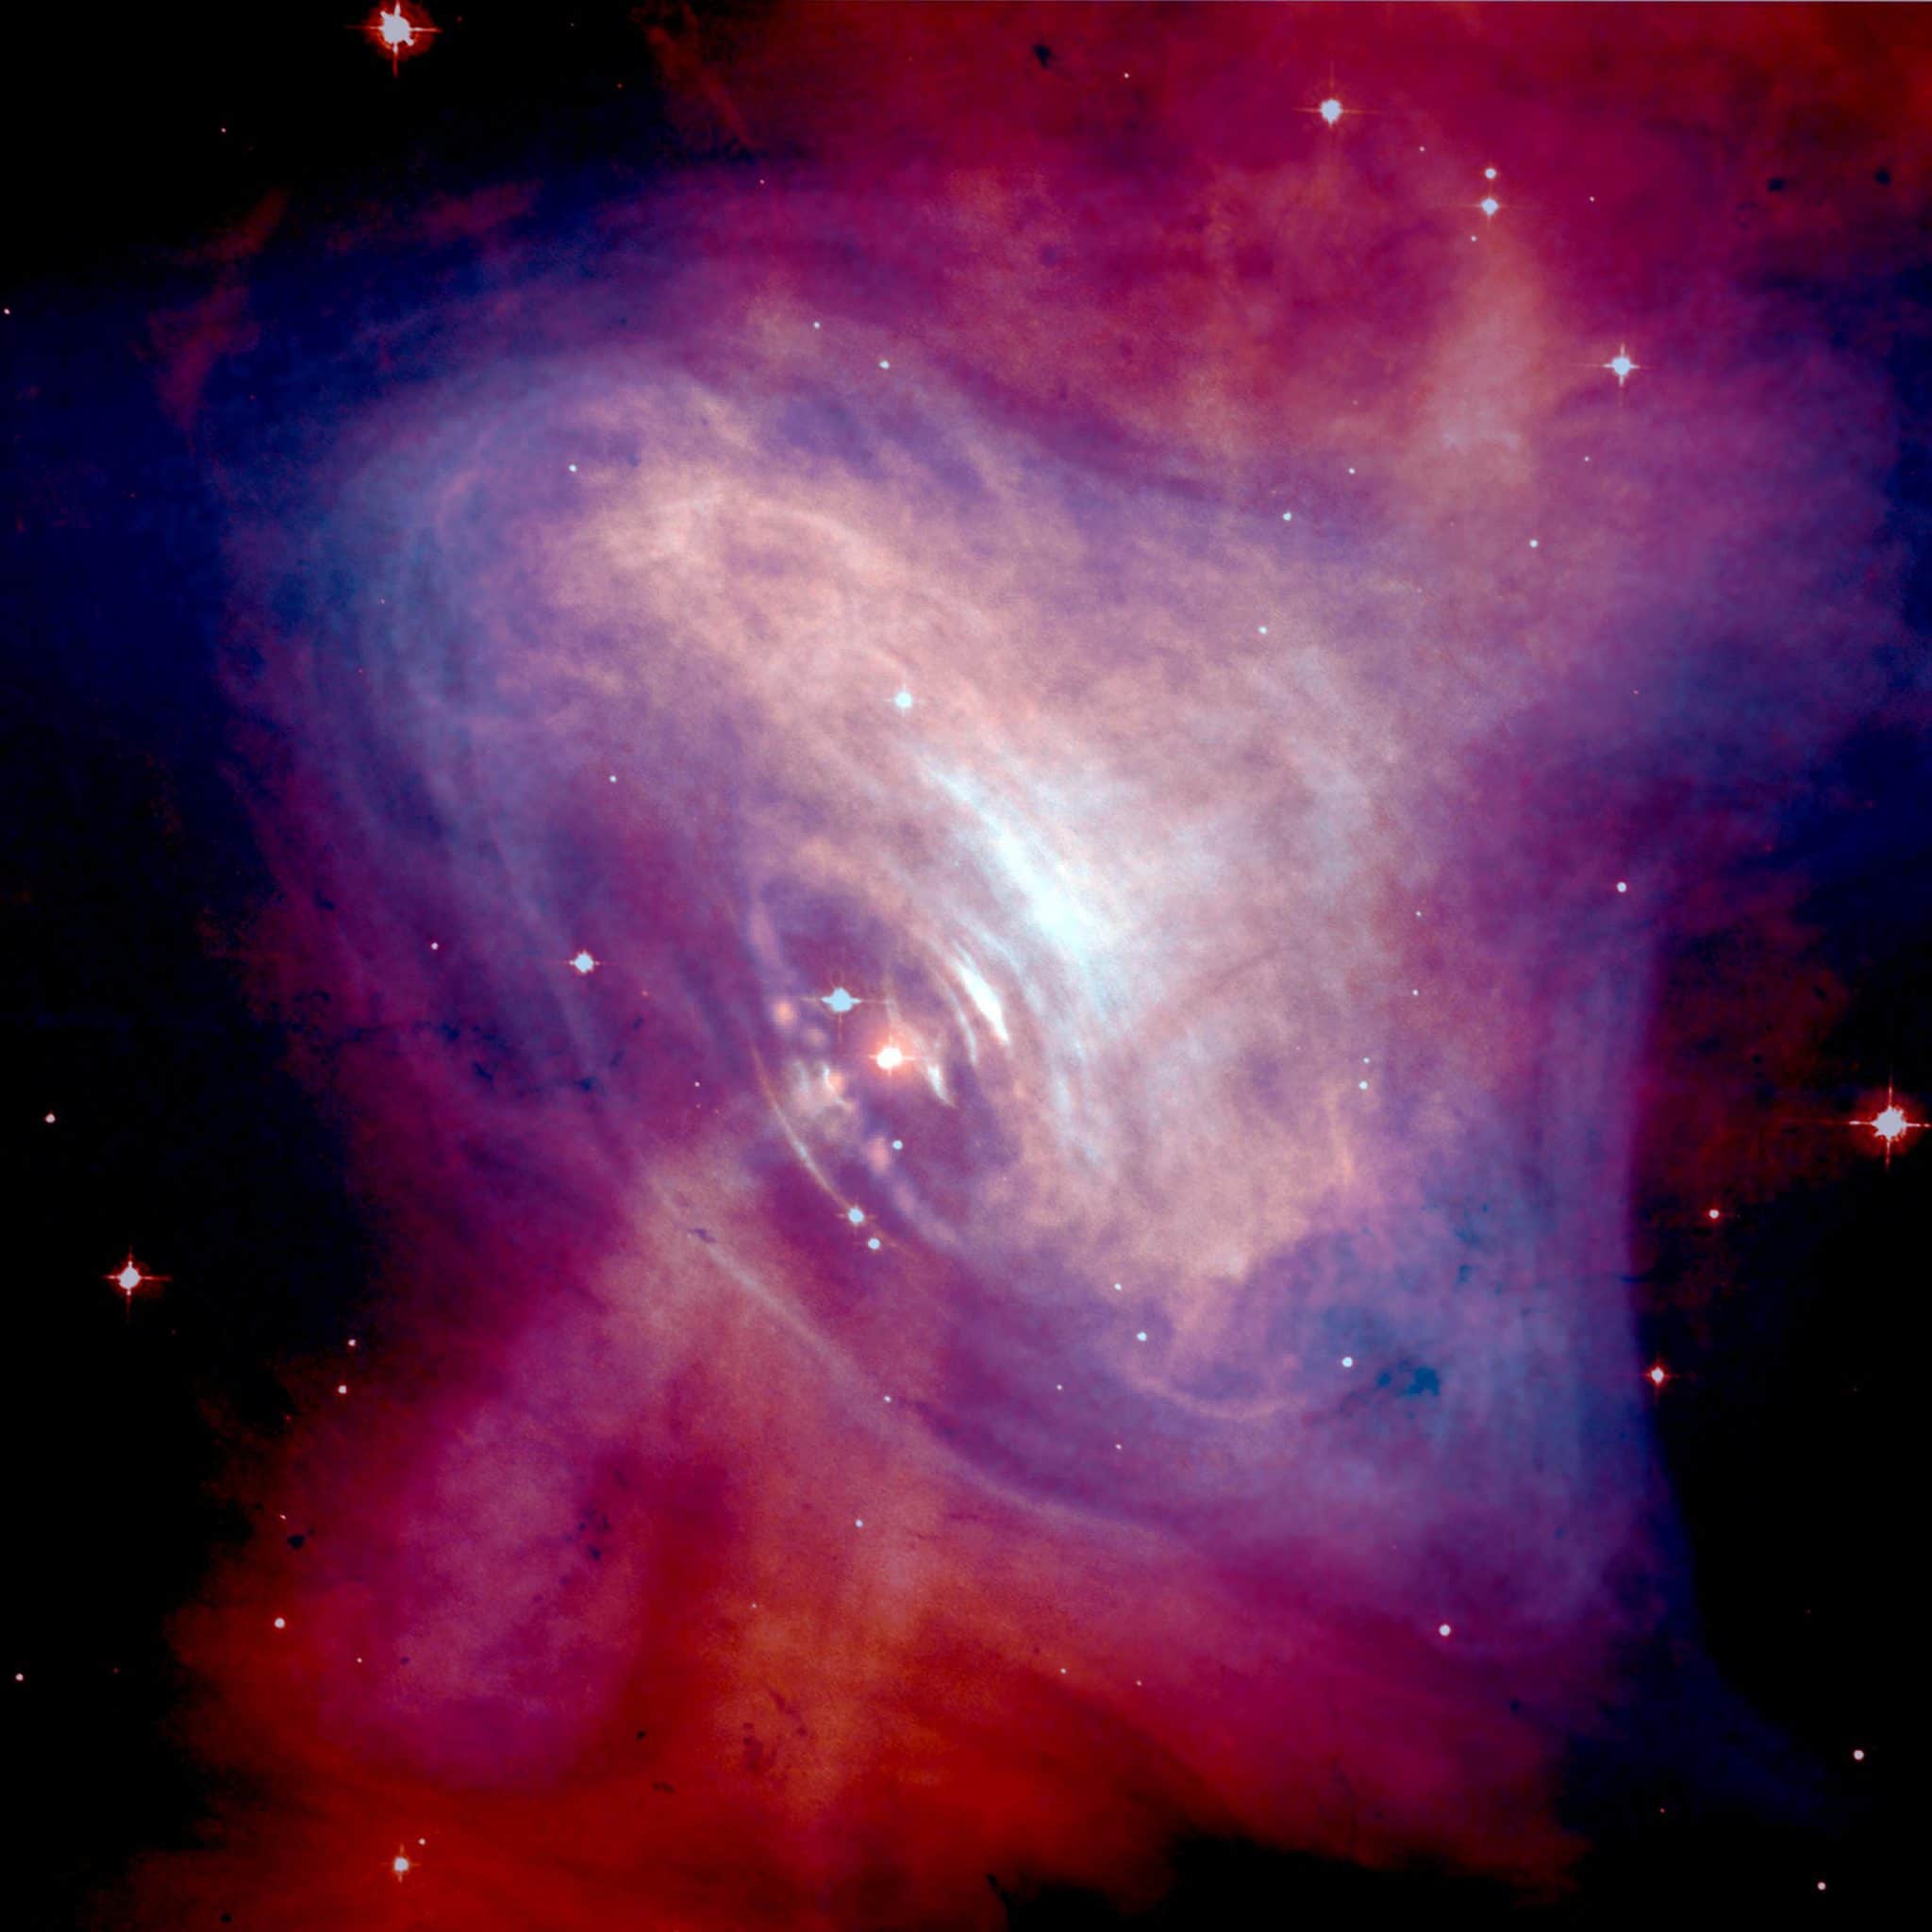 Изображение Крабовидной туманности в условных цветах (синий - рентгеновский, красный - оптический диапазон). В центре туманности - пульсар. НАСА, 2002 г. (Общественное достояние).